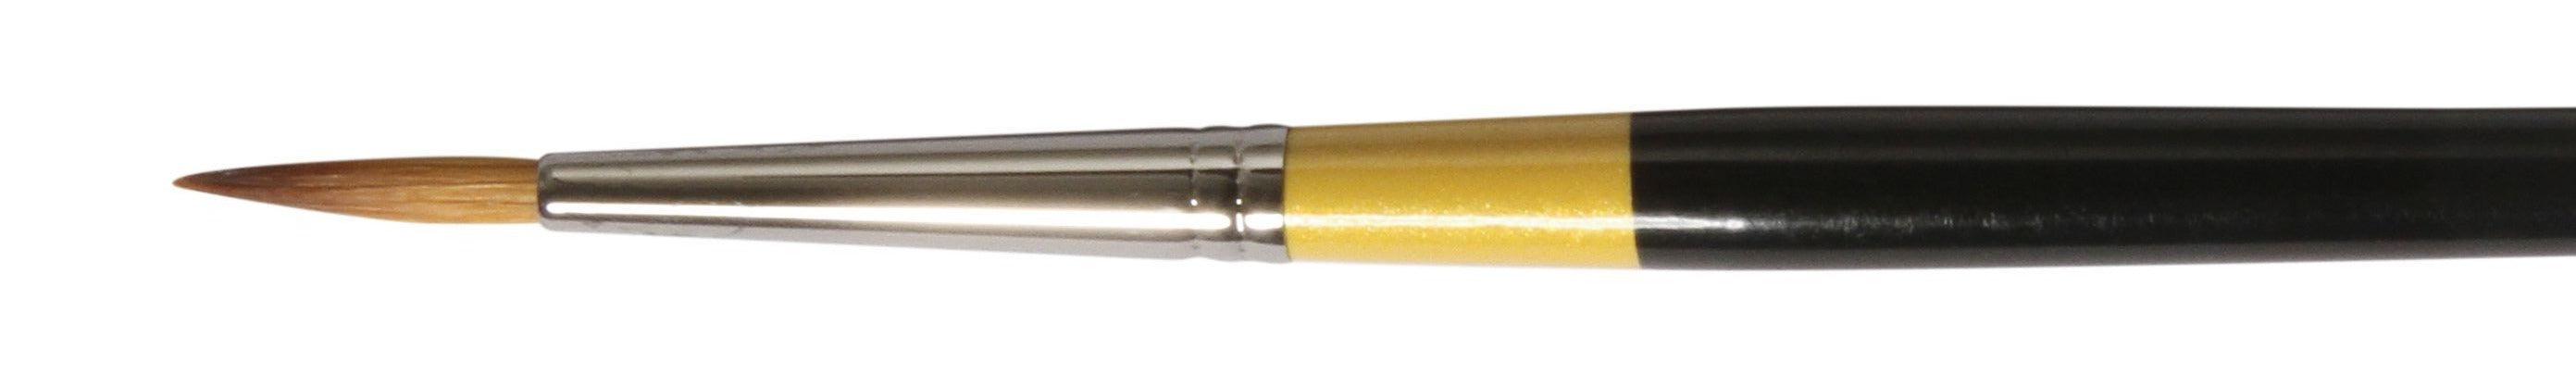 Daler Rowney System 3 Short Handle Brush Round  SY85 Size 4